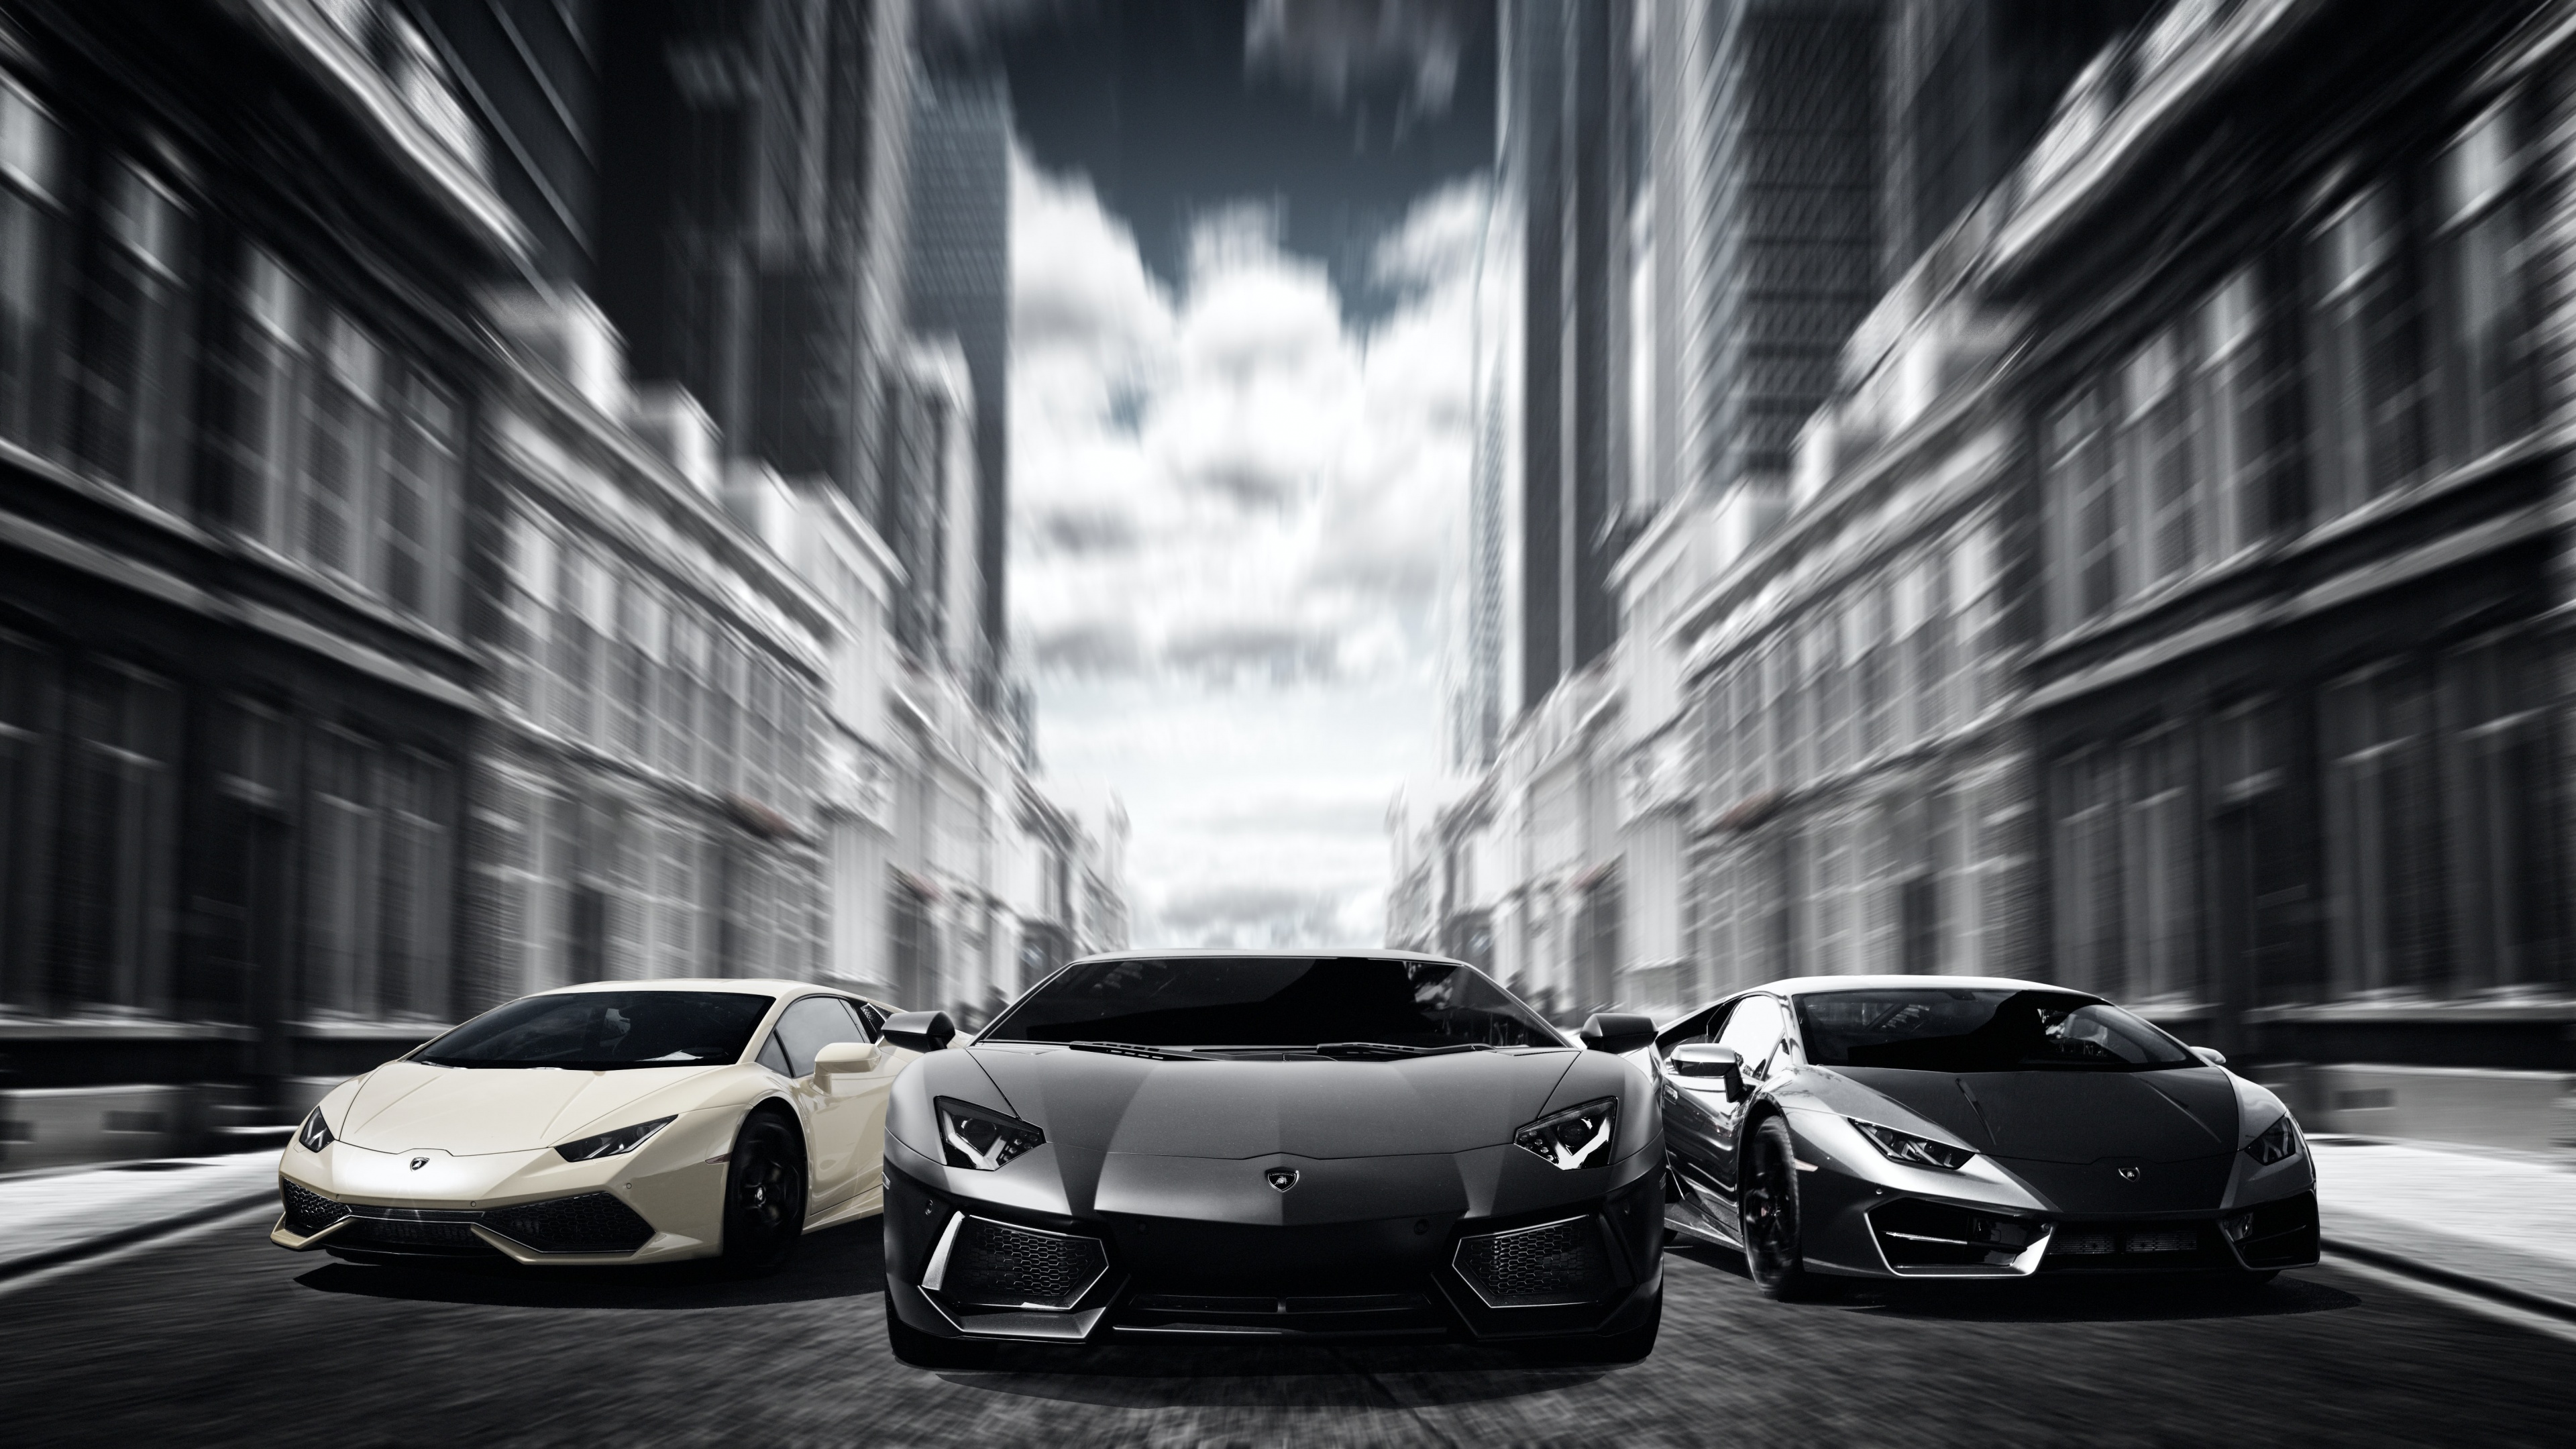 Lamborghini Cars 4K Wallpaper, Sports cars, Luxury cars, Automobile